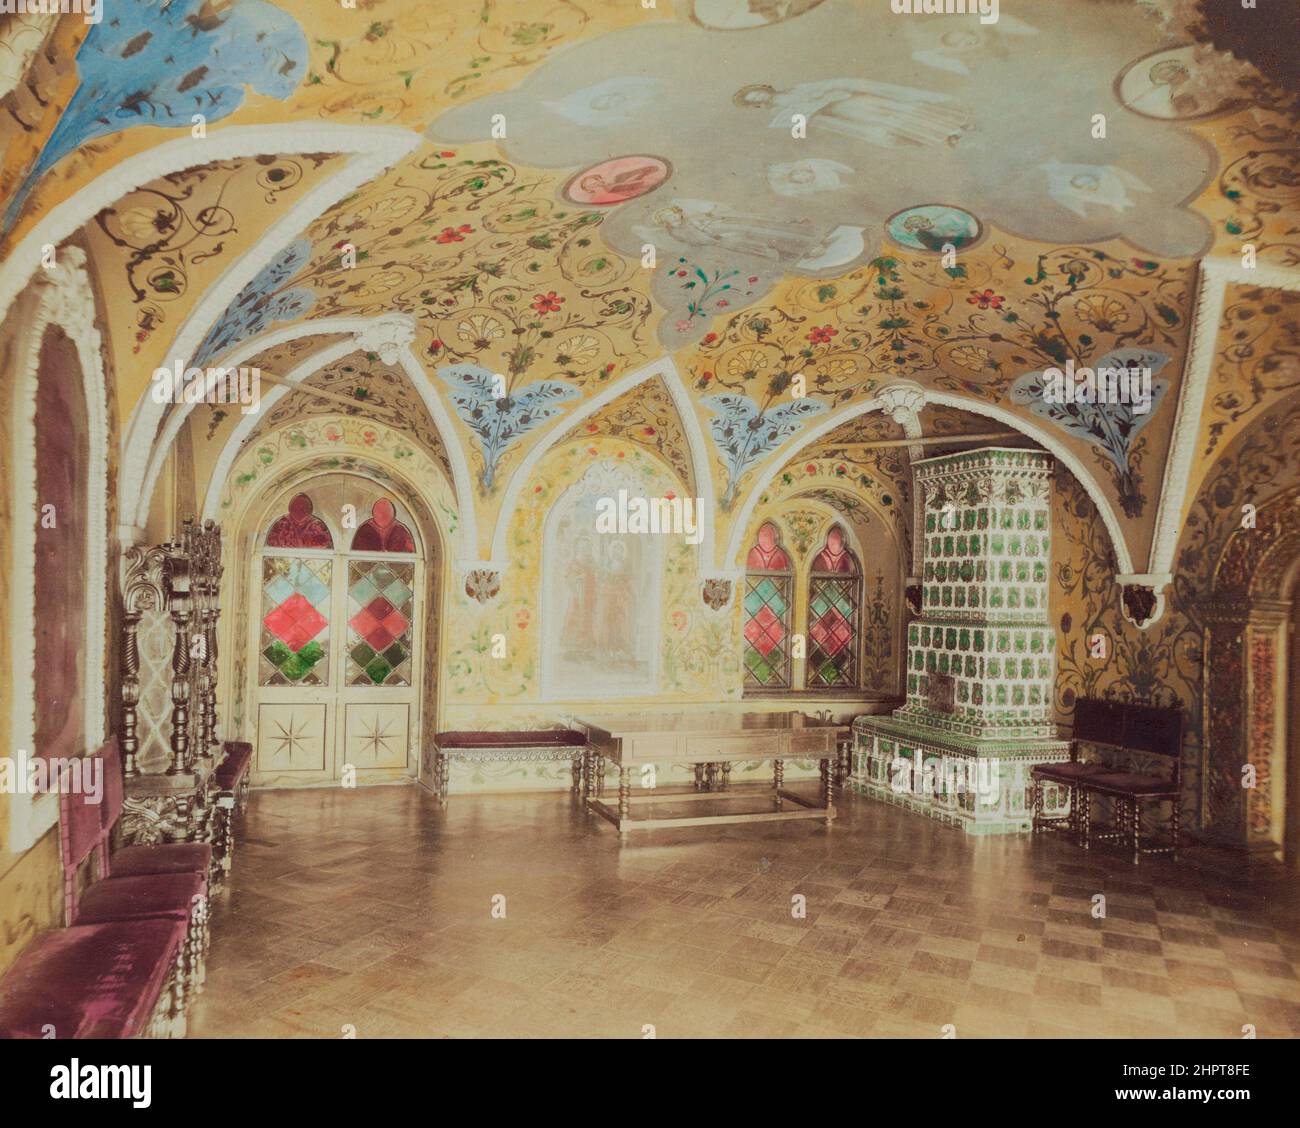 Vintage-Foto des Innenraums mit dekorierter Decke, Ikonen und Herd im Moskauer Kreml. Russisches Reich. B. Avanzo, c. 1890-c. 1900 Stockfoto